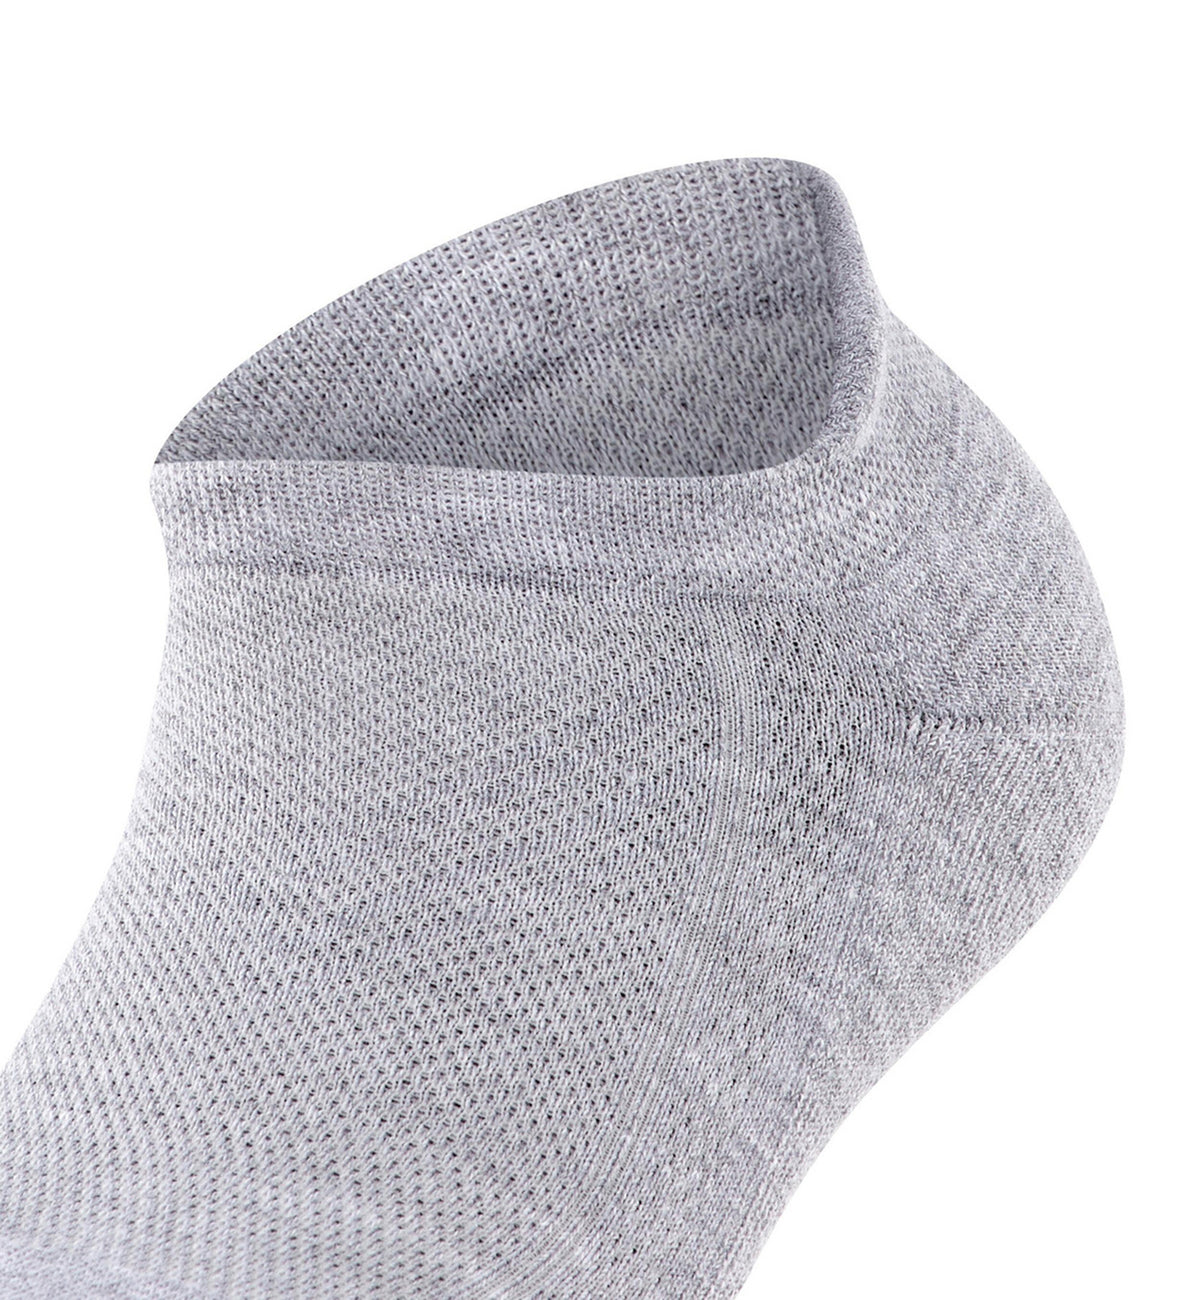 FALKE Cool Kick Sneaker Socks (46331),6.5/7.5,Light Grey - Light Grey,6.5/7.5